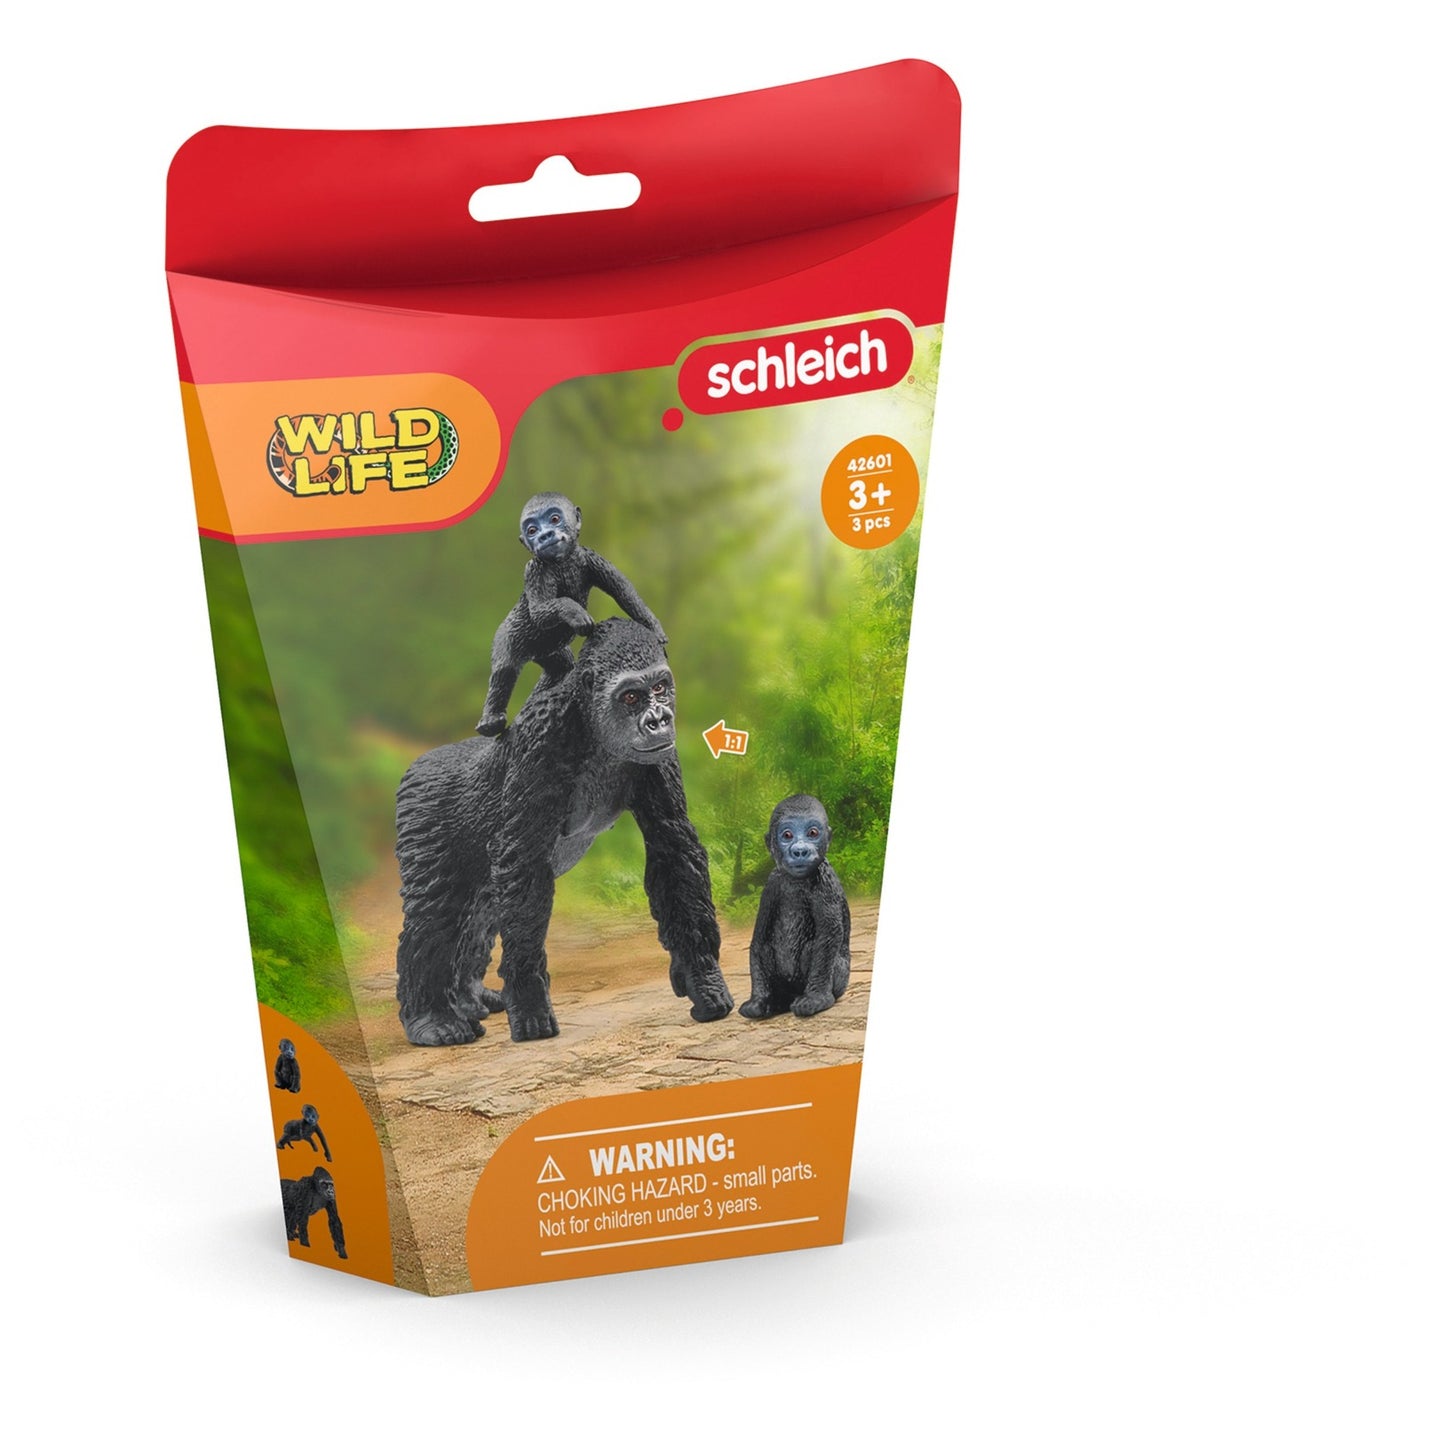 Schleich Wildlife Gorilla Family 42601